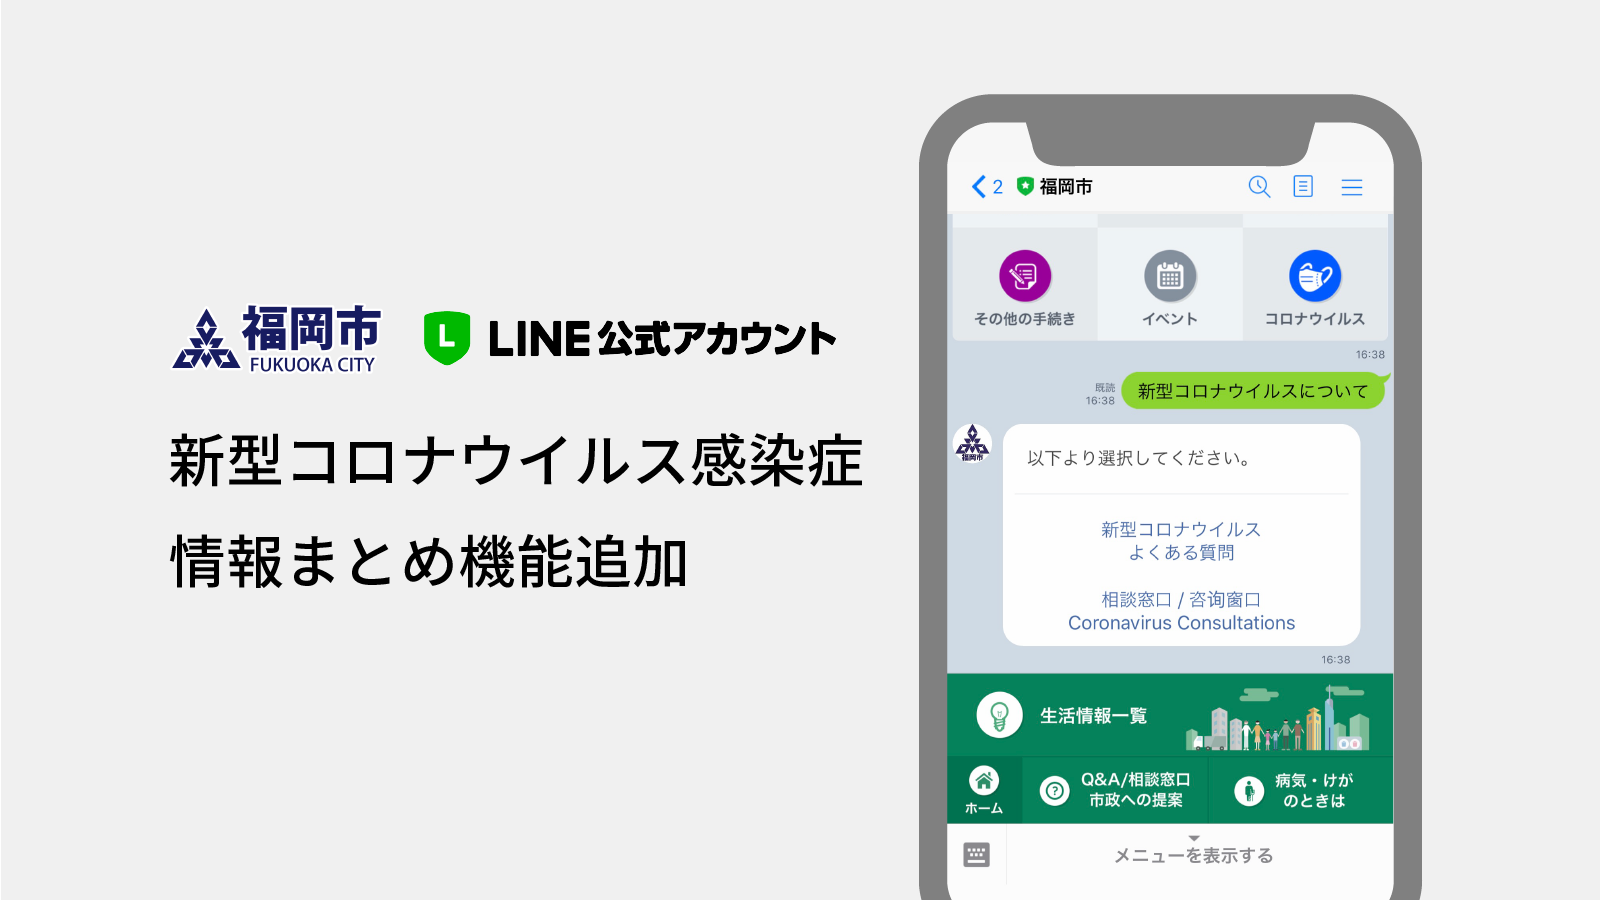 福岡市LINE公式アカウントに新型コロナウイルス感染症に関する情報まとめ機能を追加しました サムネイル画像